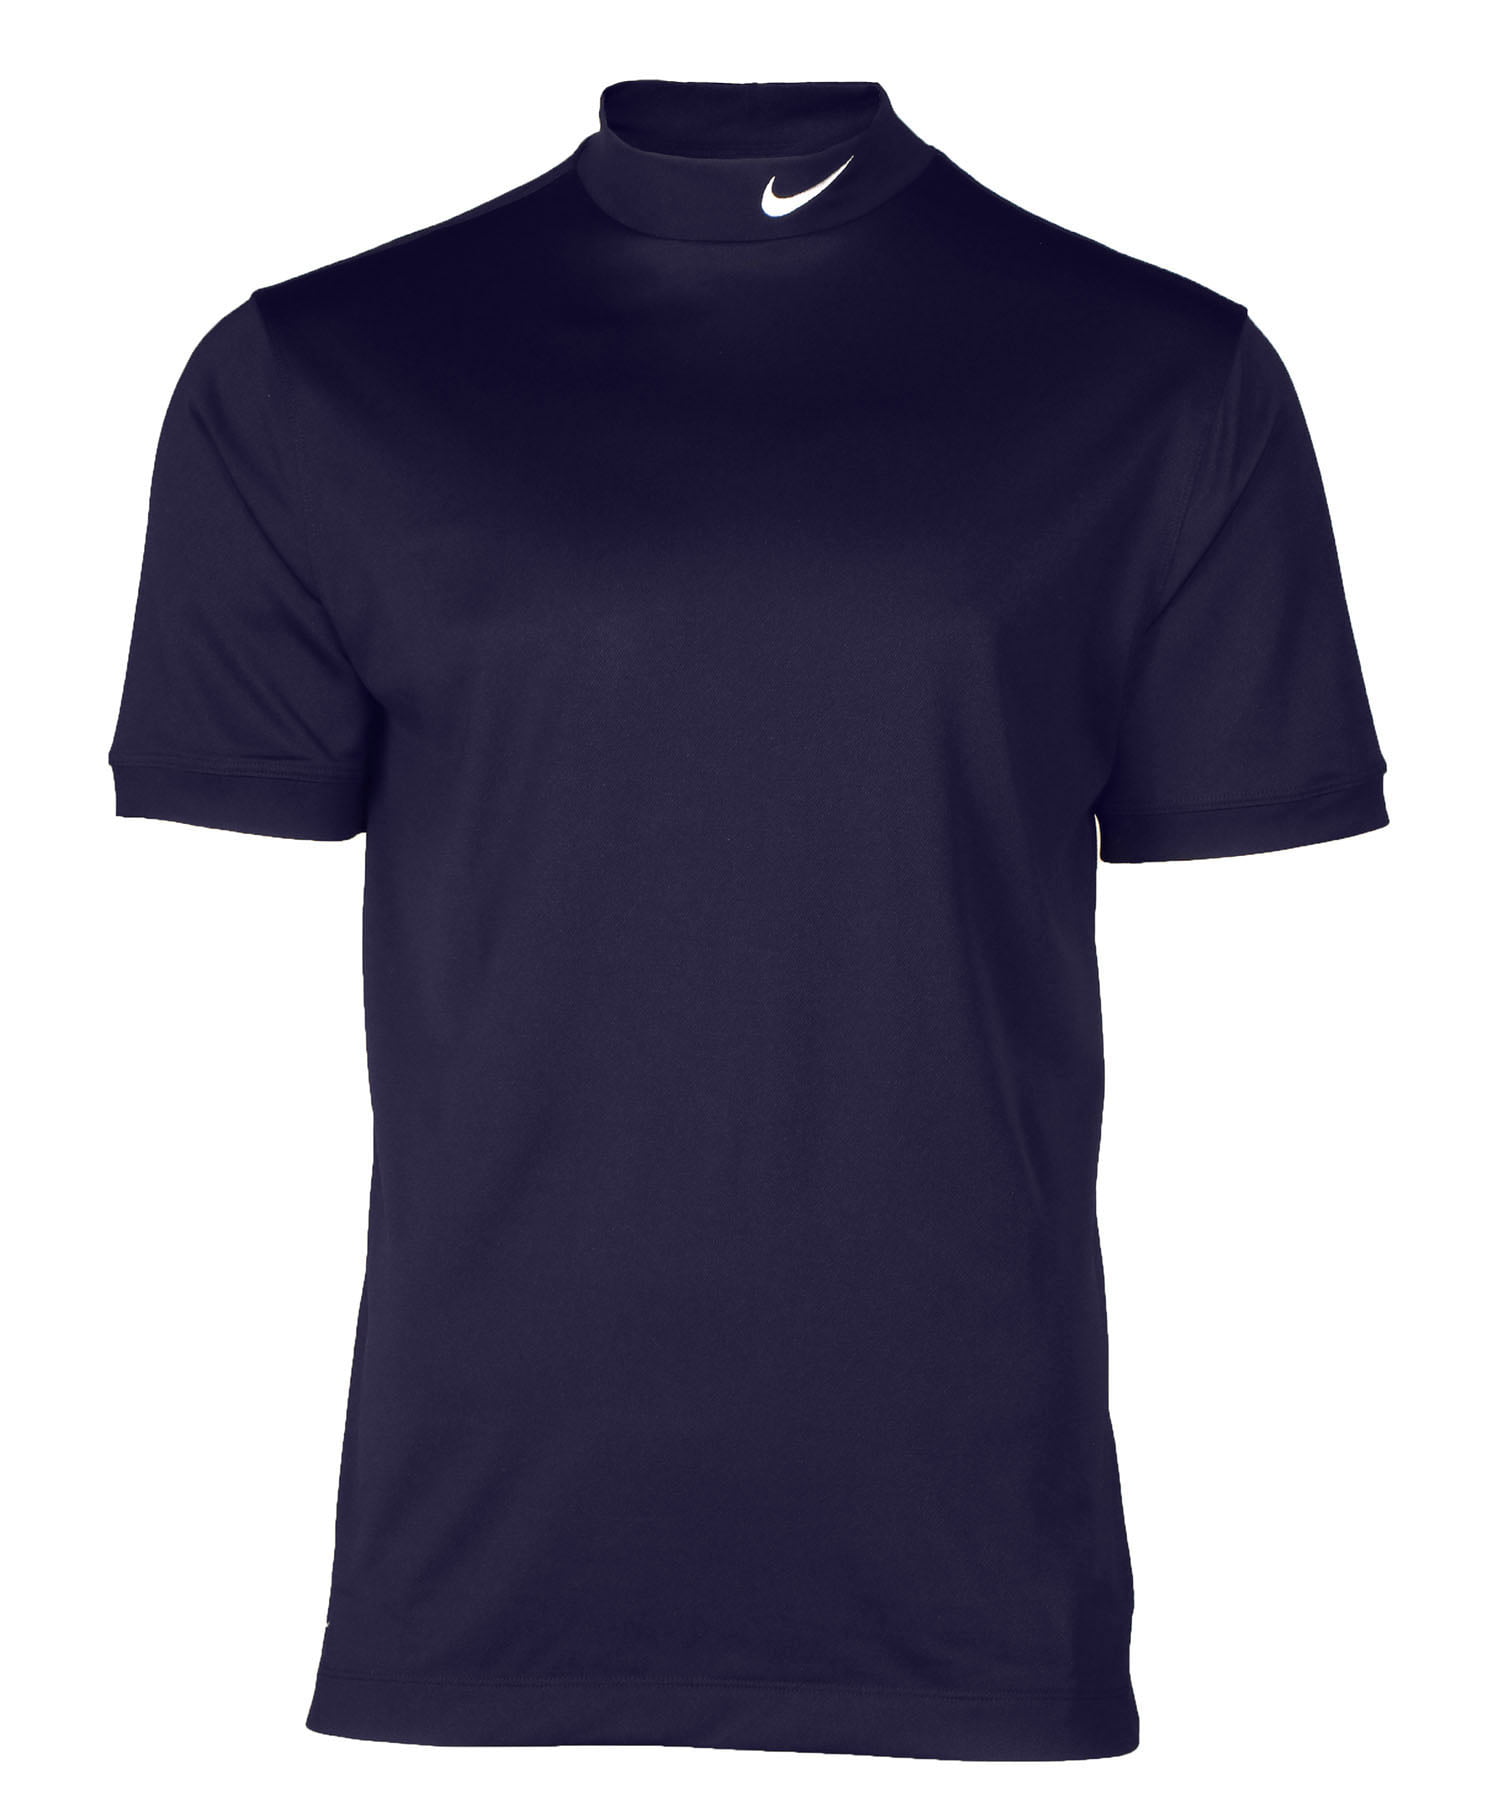 Nike - Nike Men's Tech UV Mock Neck Dri-Fit Short Sleeve Shirt ...